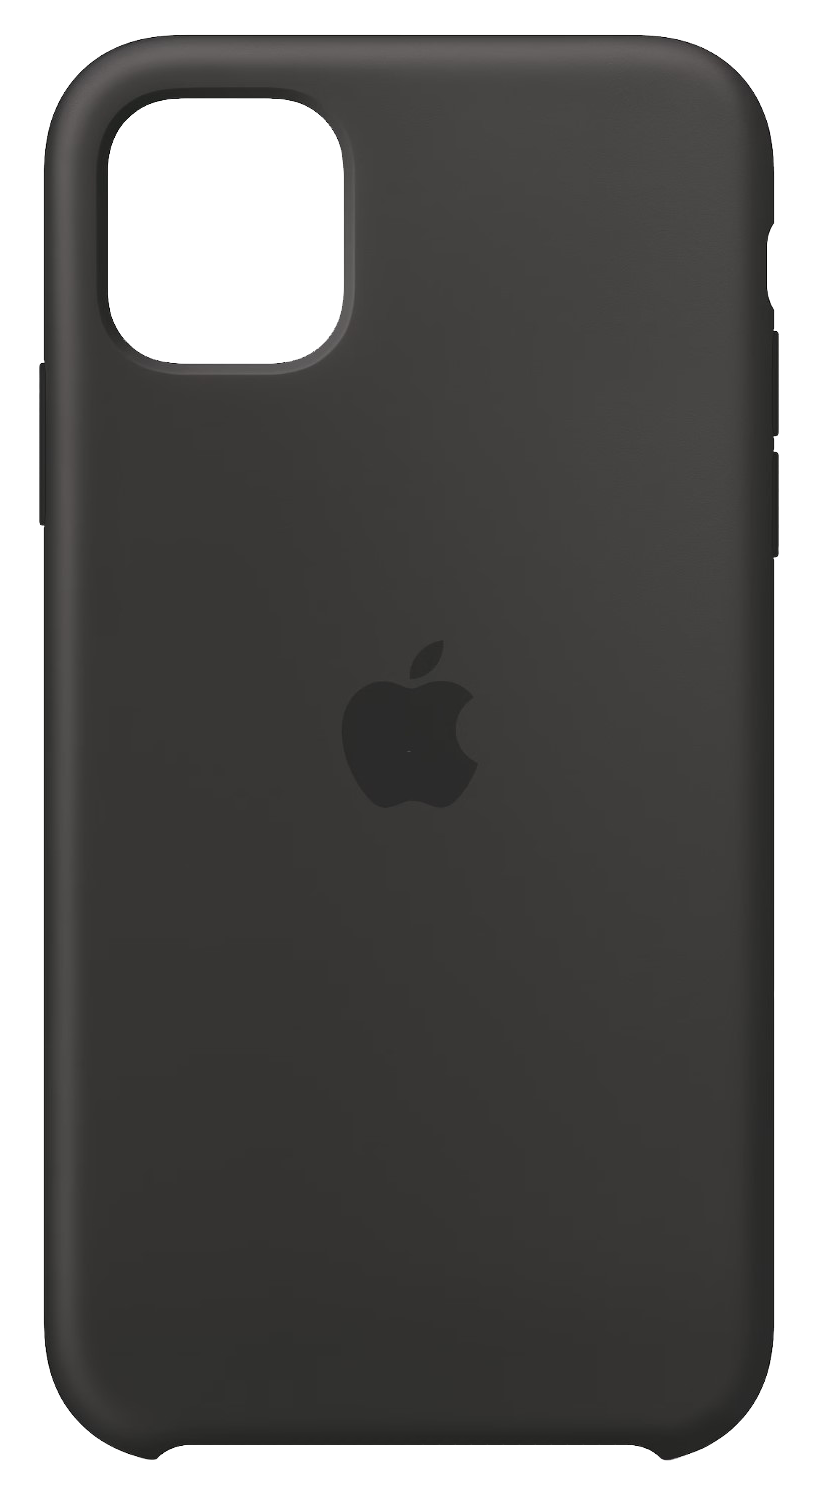 Apple Silikon Case (iPhone 11) schwarz - Ohne Vertrag